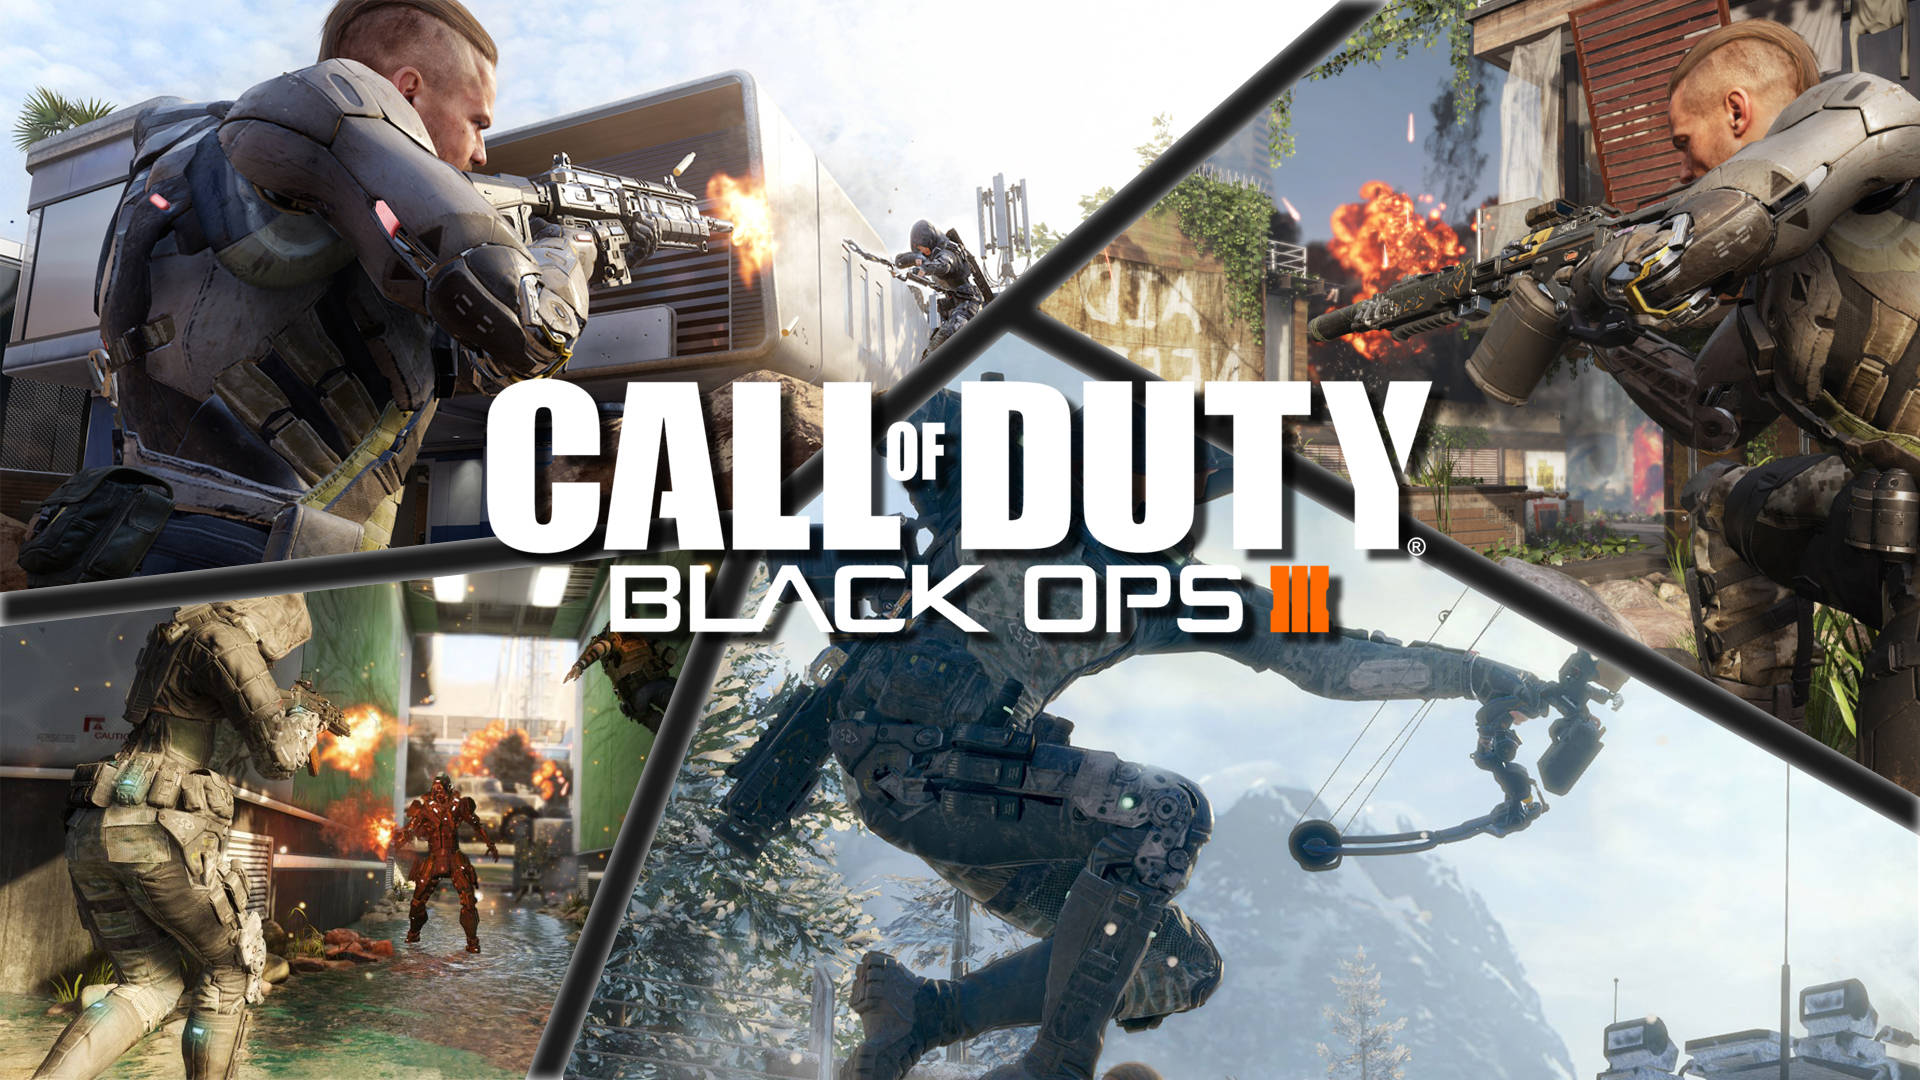 Preparatiper Il Call Of Duty Black Ops 3 Sfondo